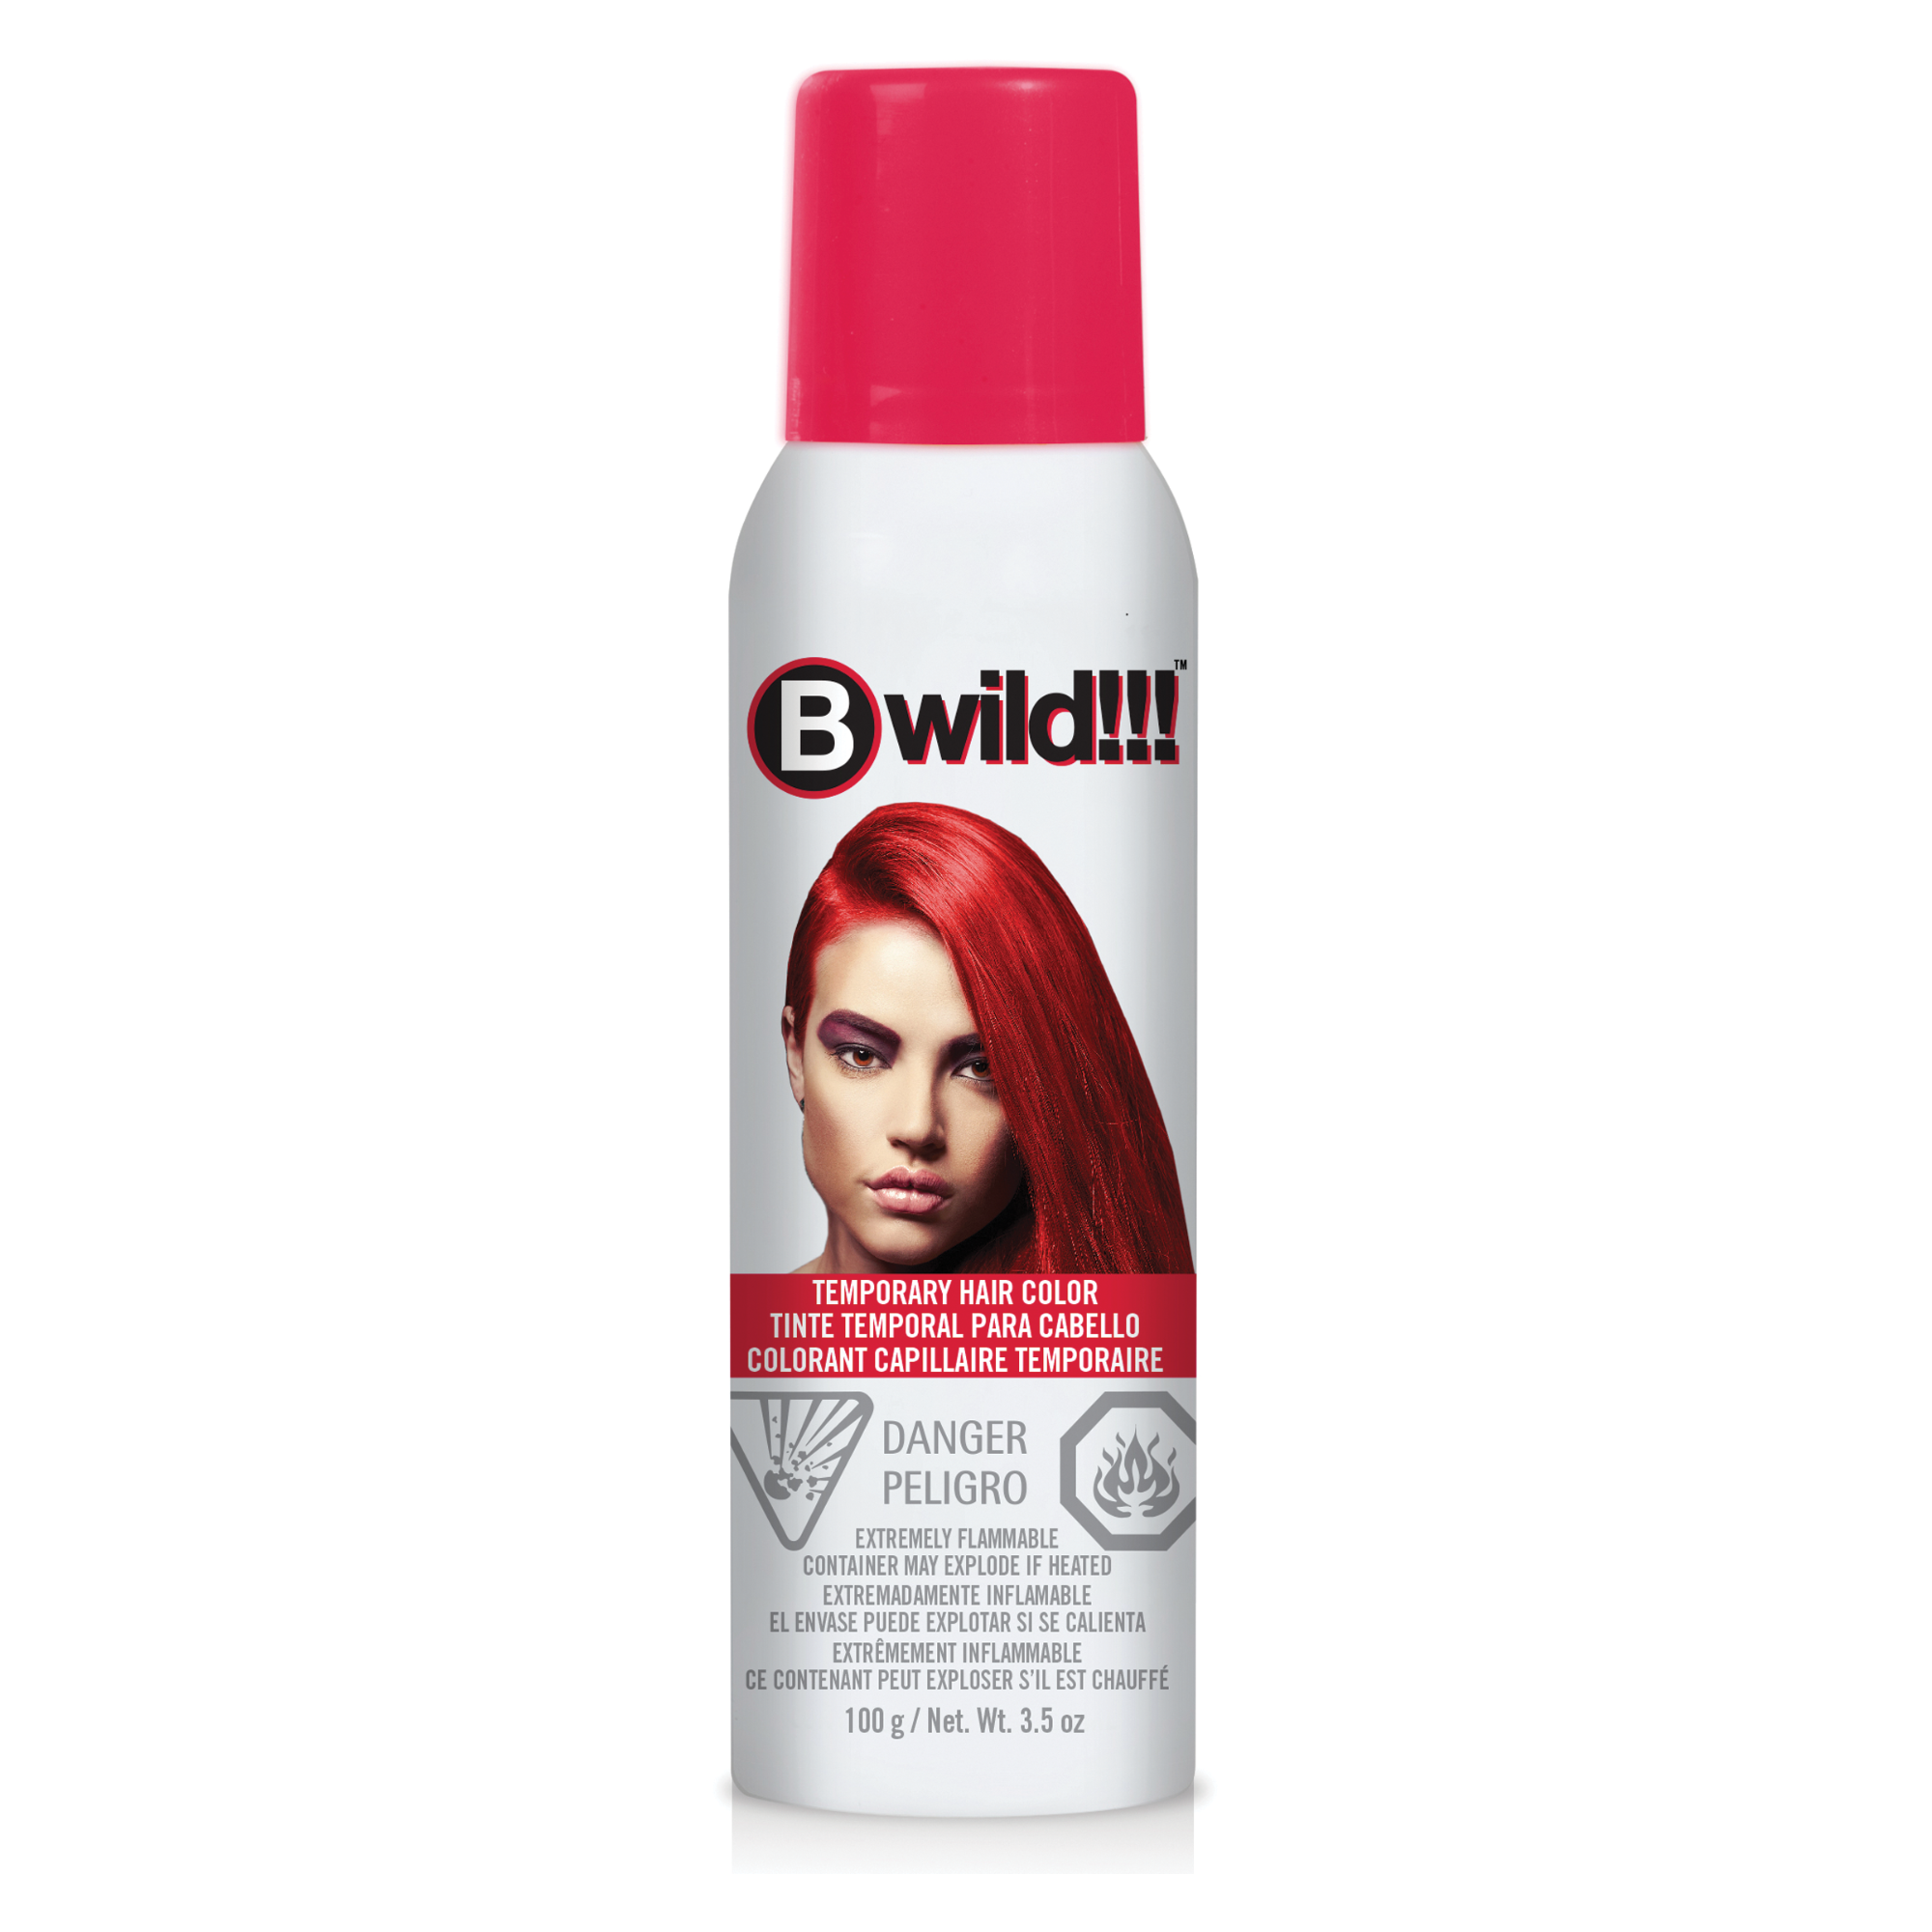 B Wild Temporary Hair Color Spray